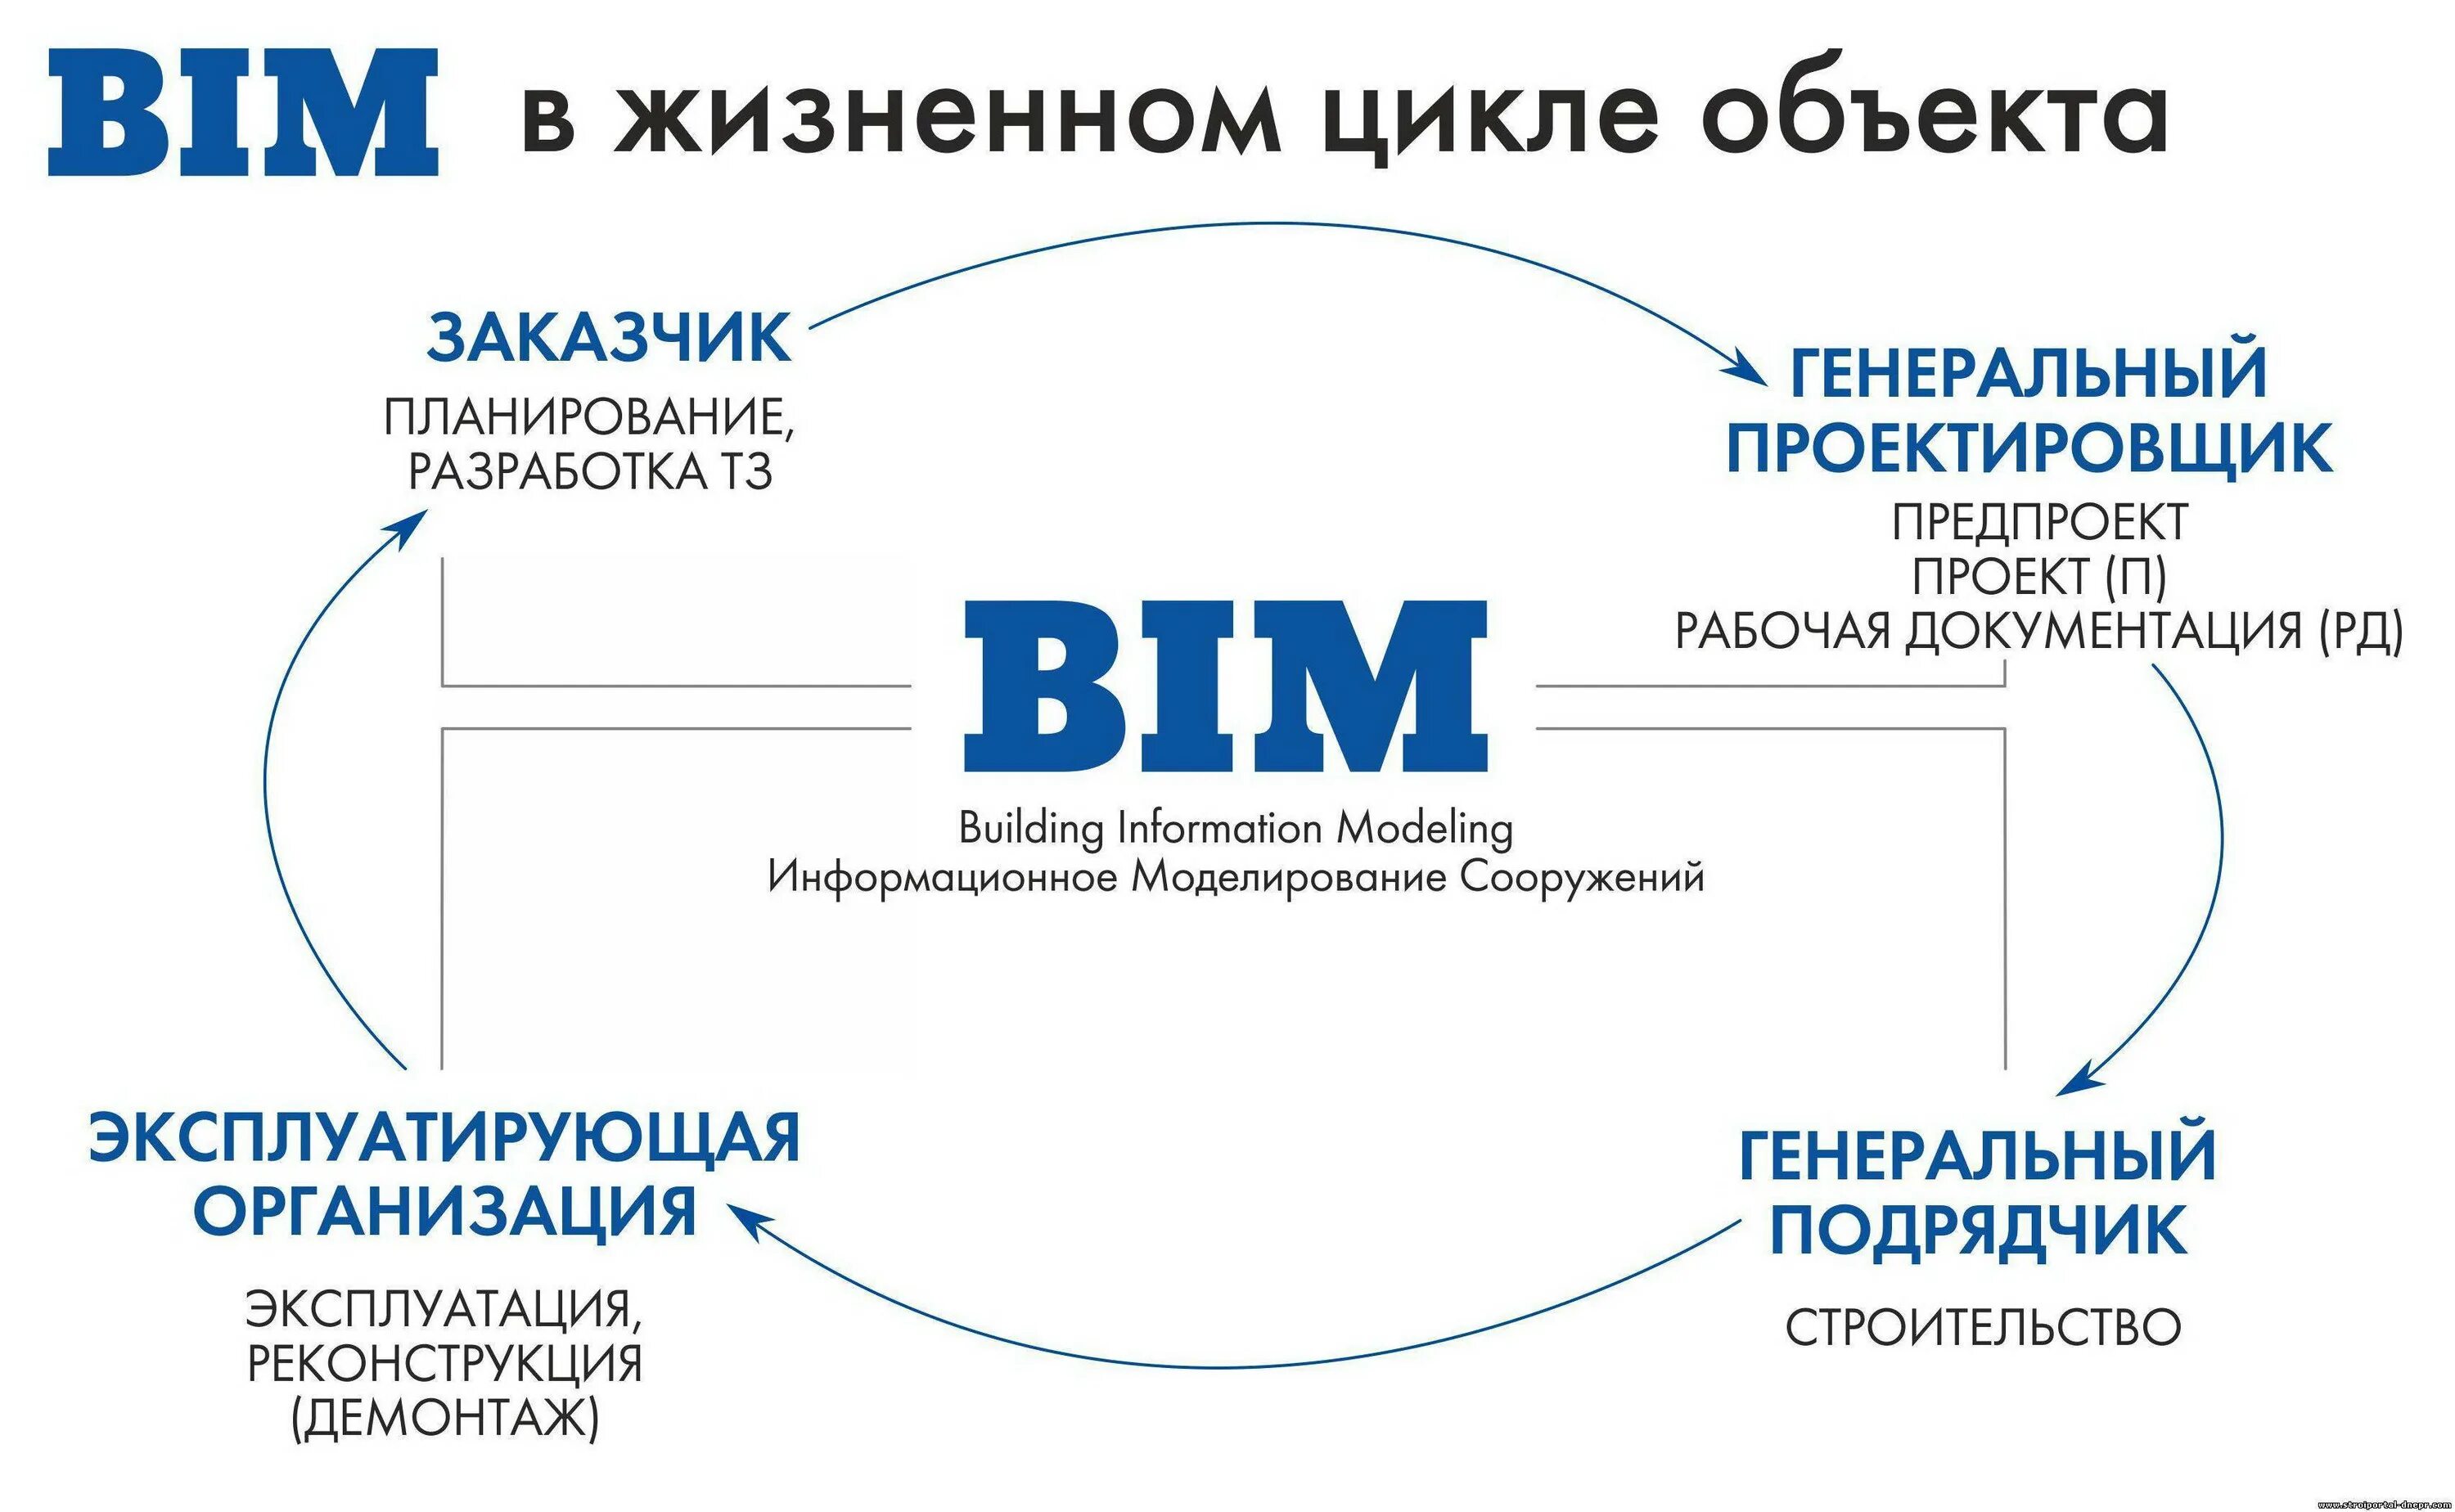 Управления жизненным циклом объектов. Этапы BIM-моделирования в строительстве. Этапы внедрения BIM технологий. Жизненный цикл здания. Жизненный цикл информационного моделирования BIM.